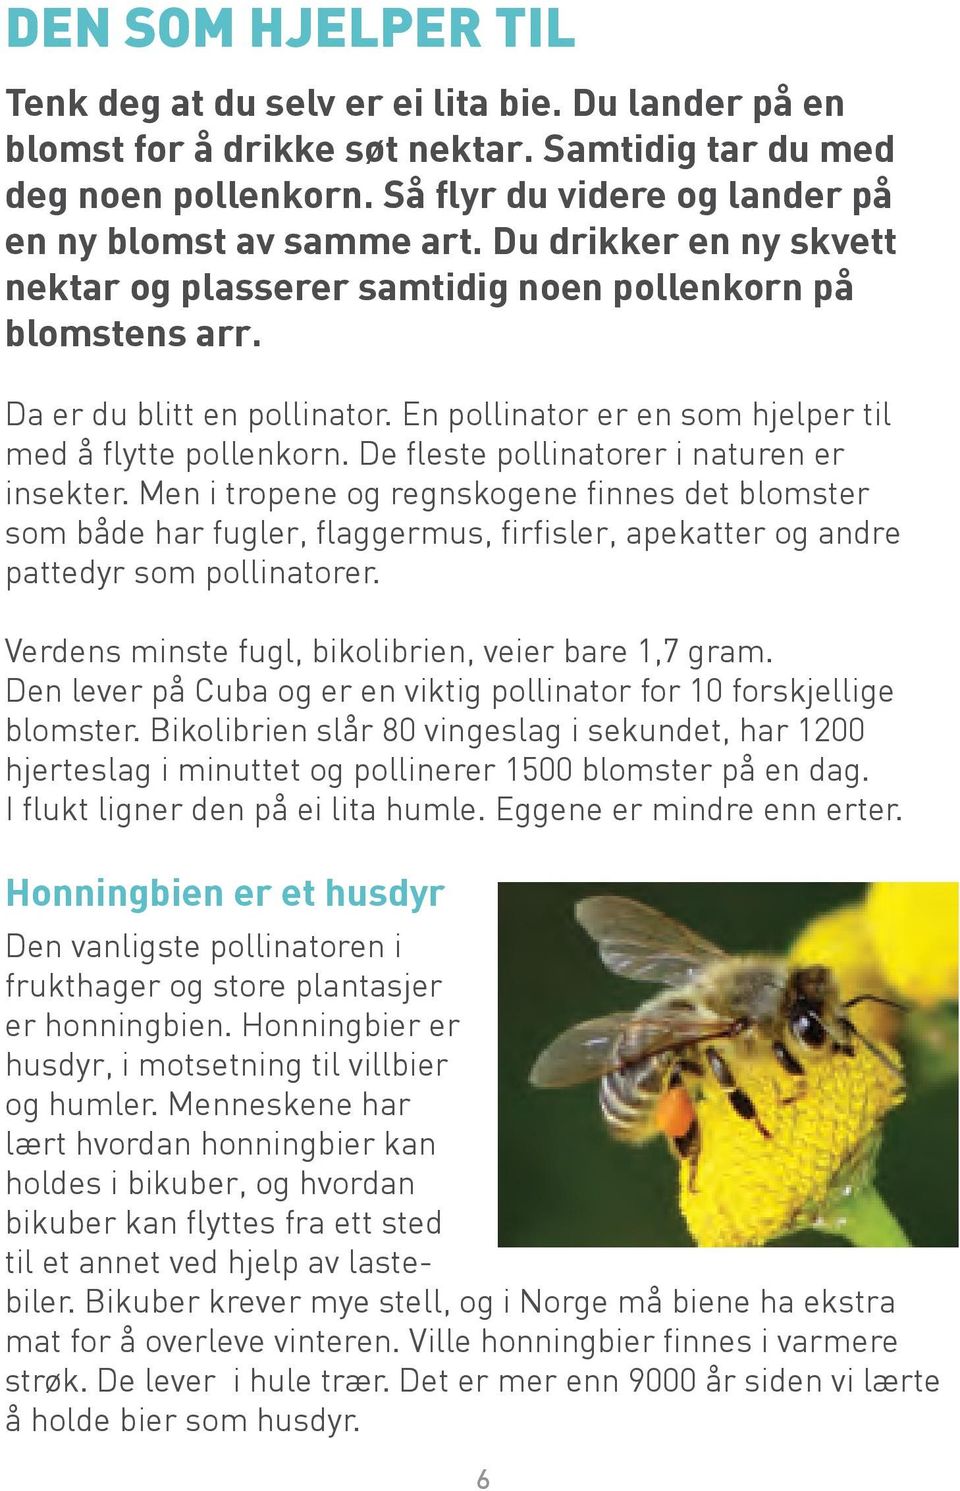 En pollinator er en som hjelper til med å flytte pollenkorn. De fleste pollinatorer i naturen er insekter.